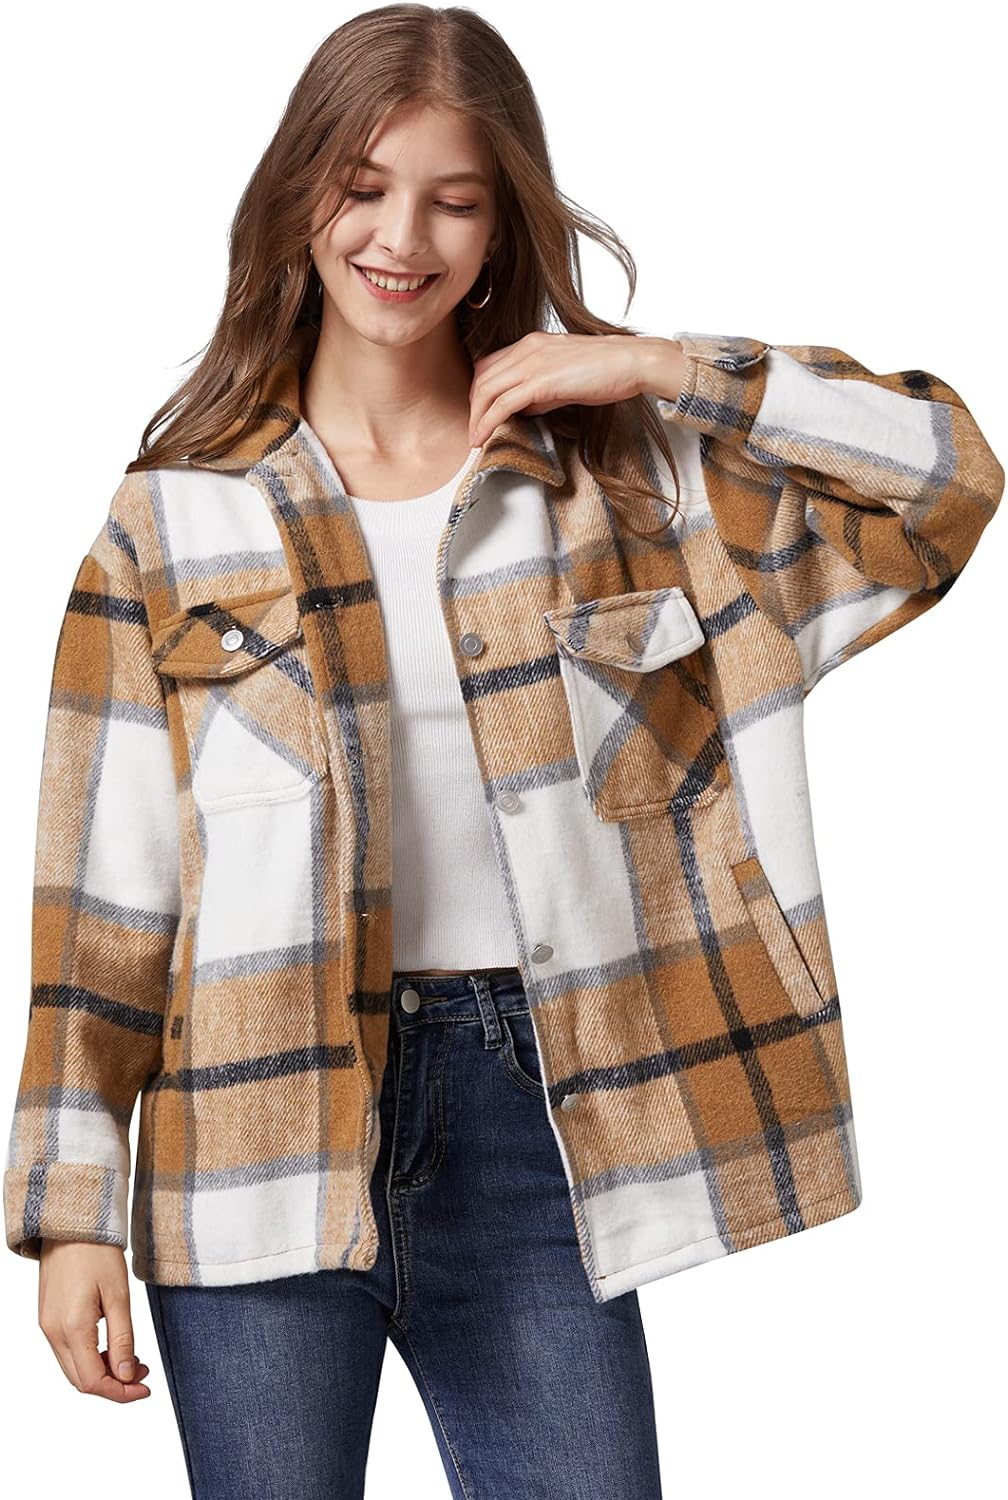 Liengoron Women Plaid Shacket Jacket Oversized Flannel Long Sleeve Plaid Shacket Shirt Jacket Button Down Plaid Shackets